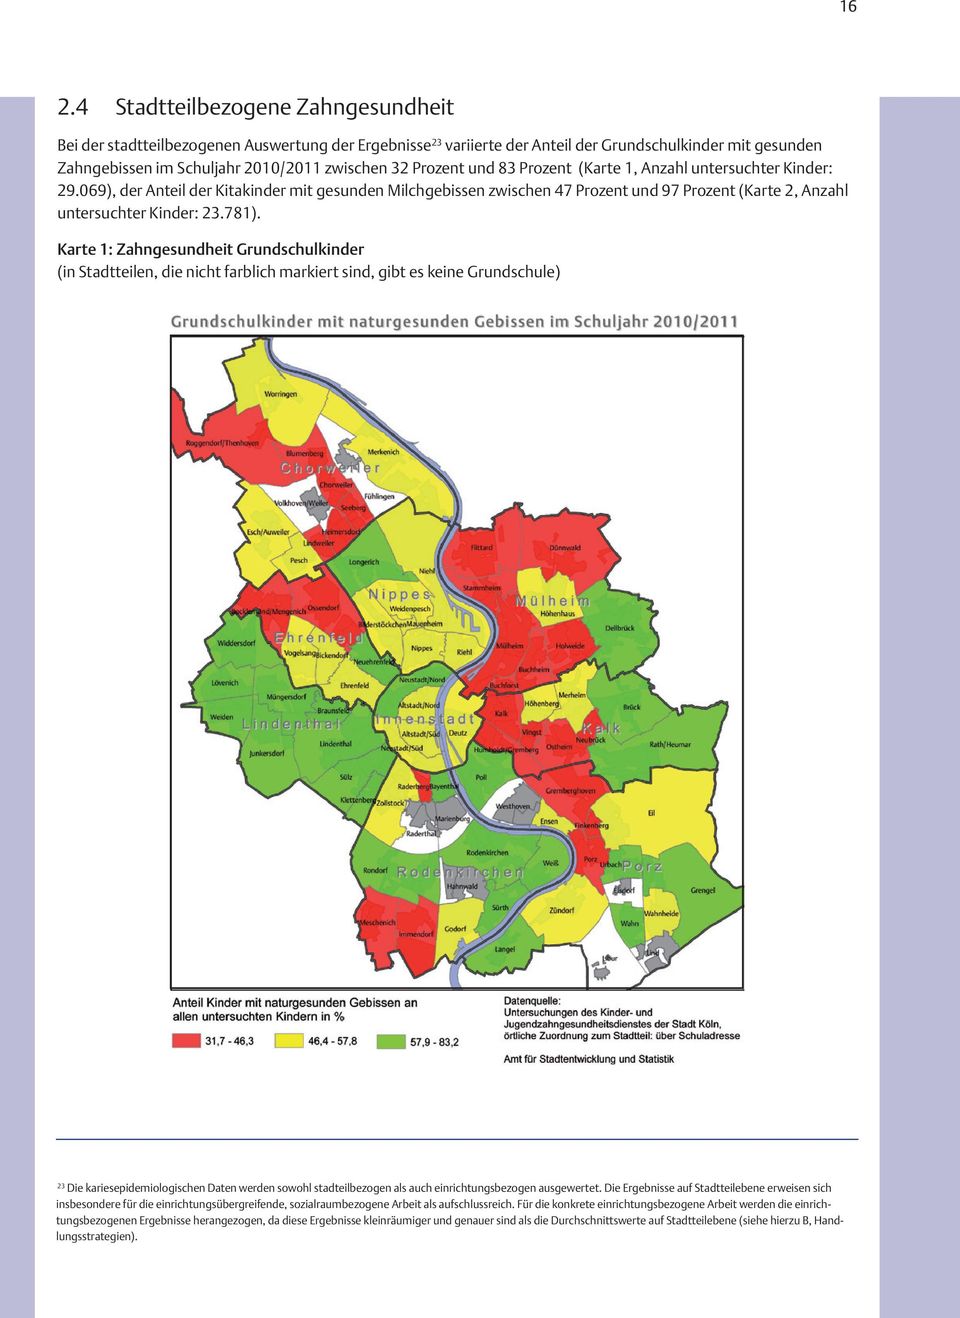 781). Karte 1: Zahngesundheit Grundschulkinder (in Stadtteilen, die nicht farblich markiert sind, gibt es keine Grundschule) 23 Die kariesepidemiologischen Daten werden sowohl stadteilbezogen als